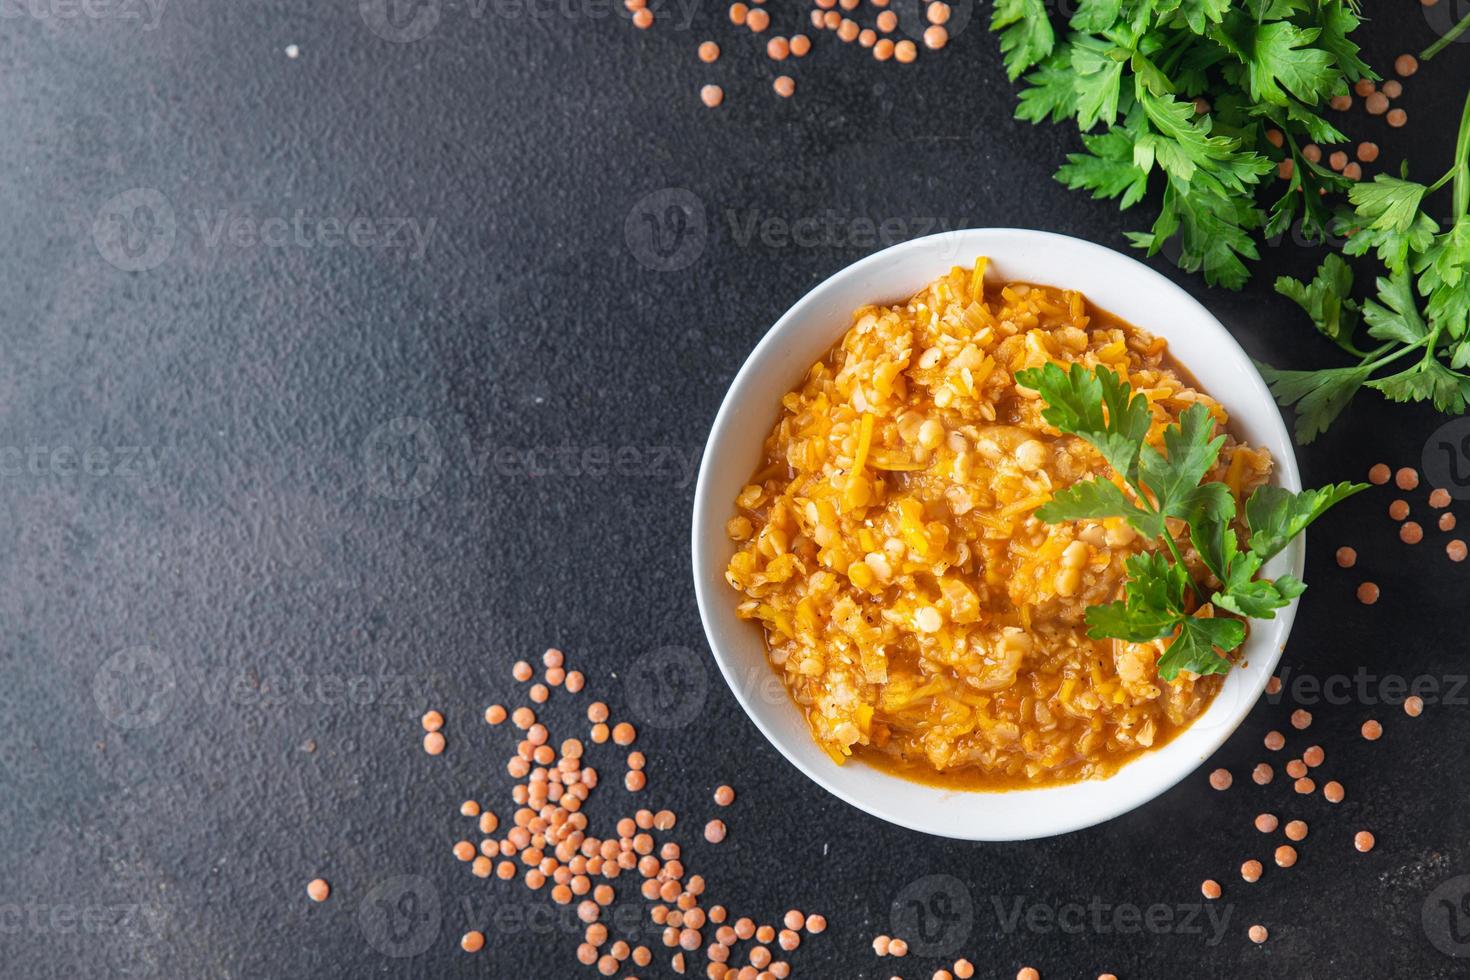 lentejas rojas con verduras legumbres guisadas y especias al curry sopa dal indio foto